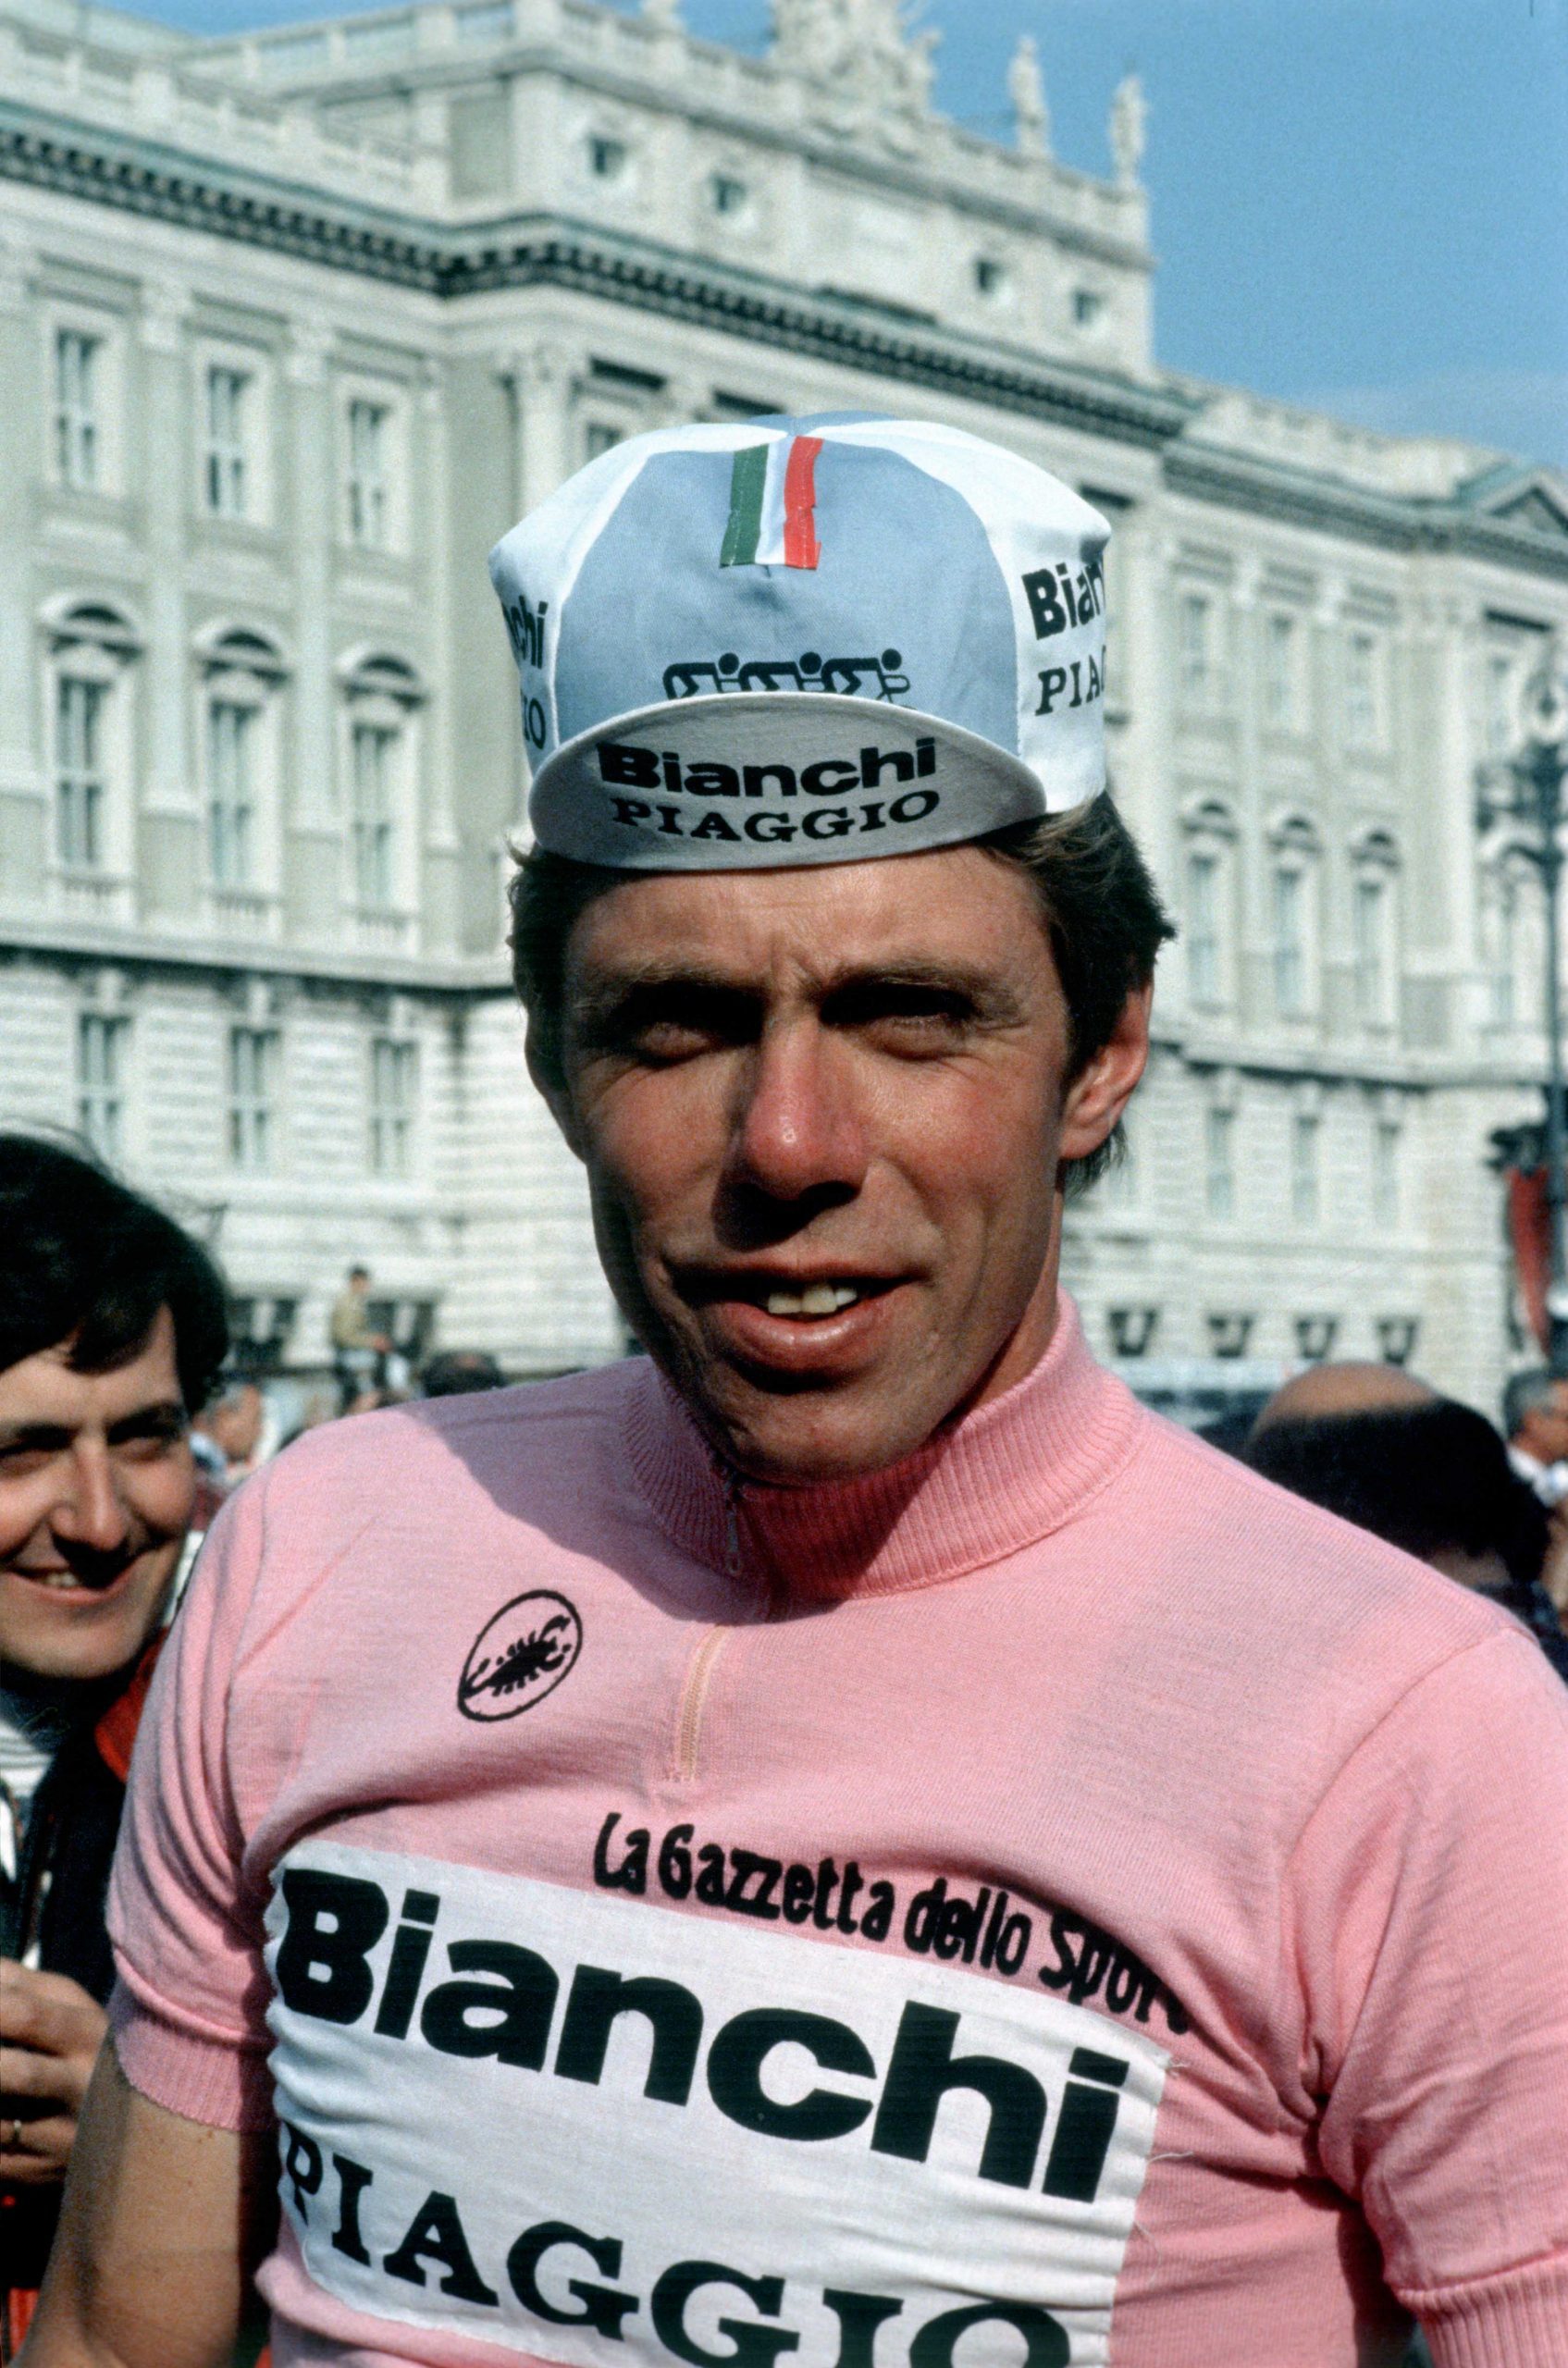 Giro d’Italia: Profilene